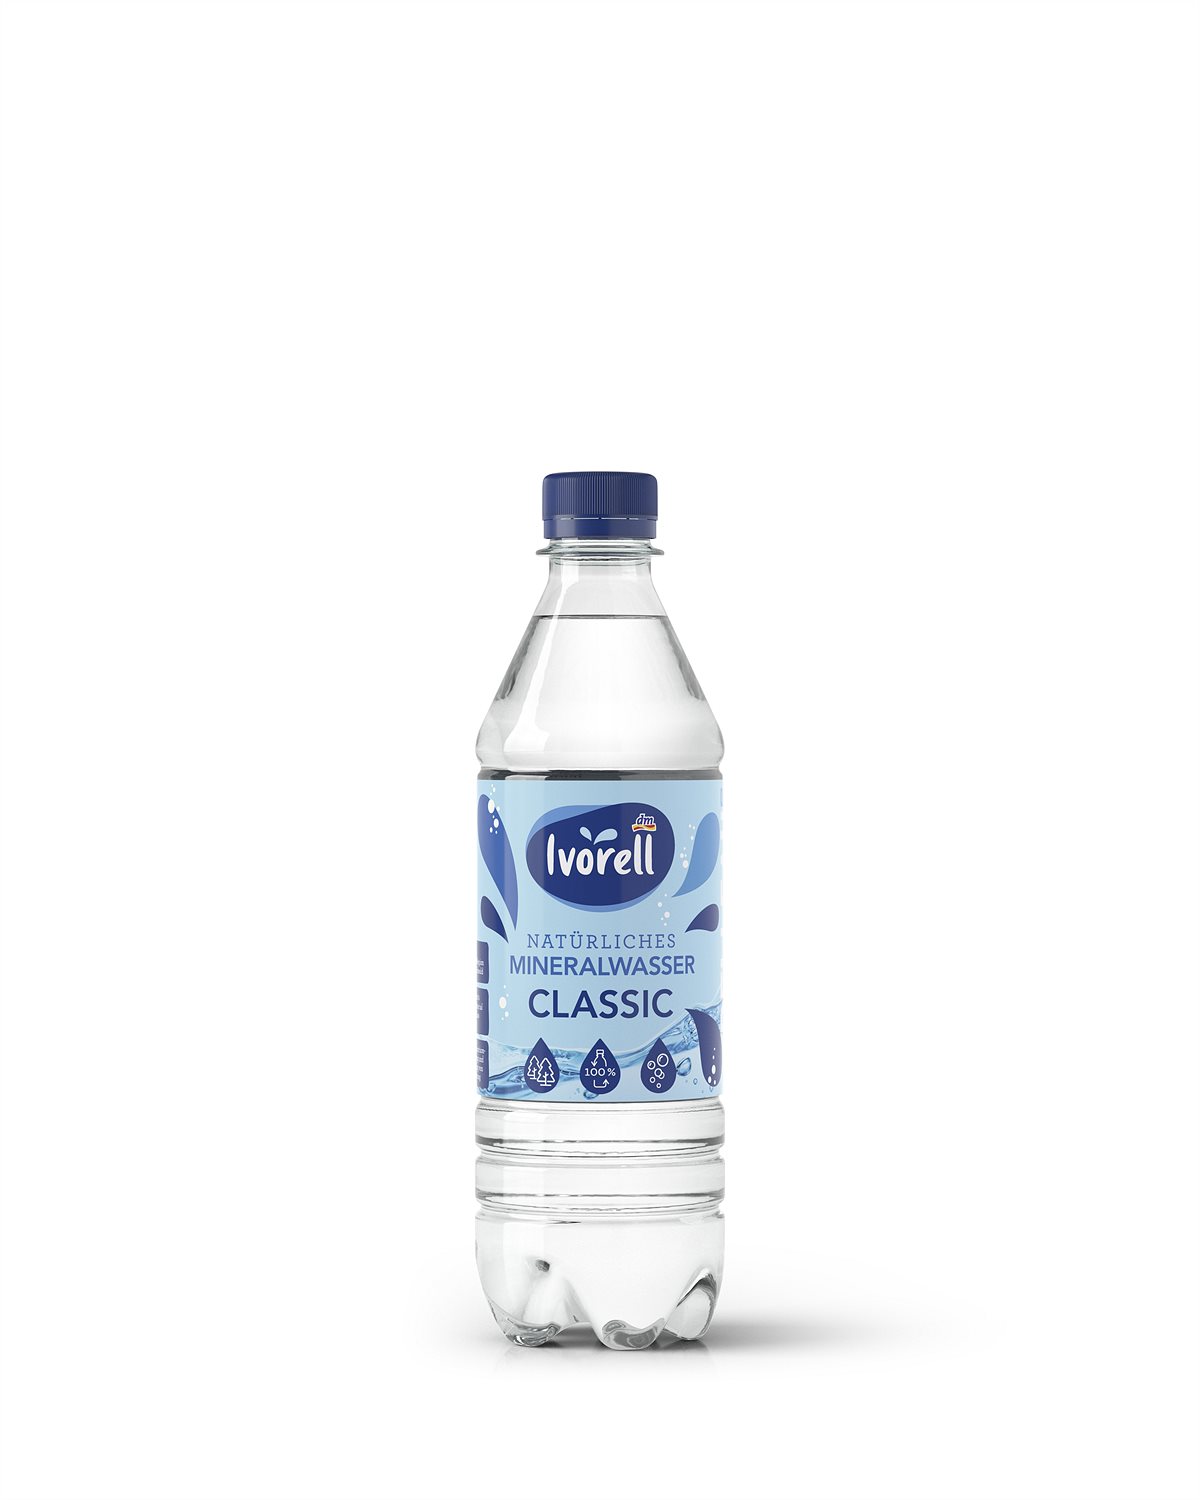 Natürliches Mineralwasser Classic, 500 ml 0,45 Euro